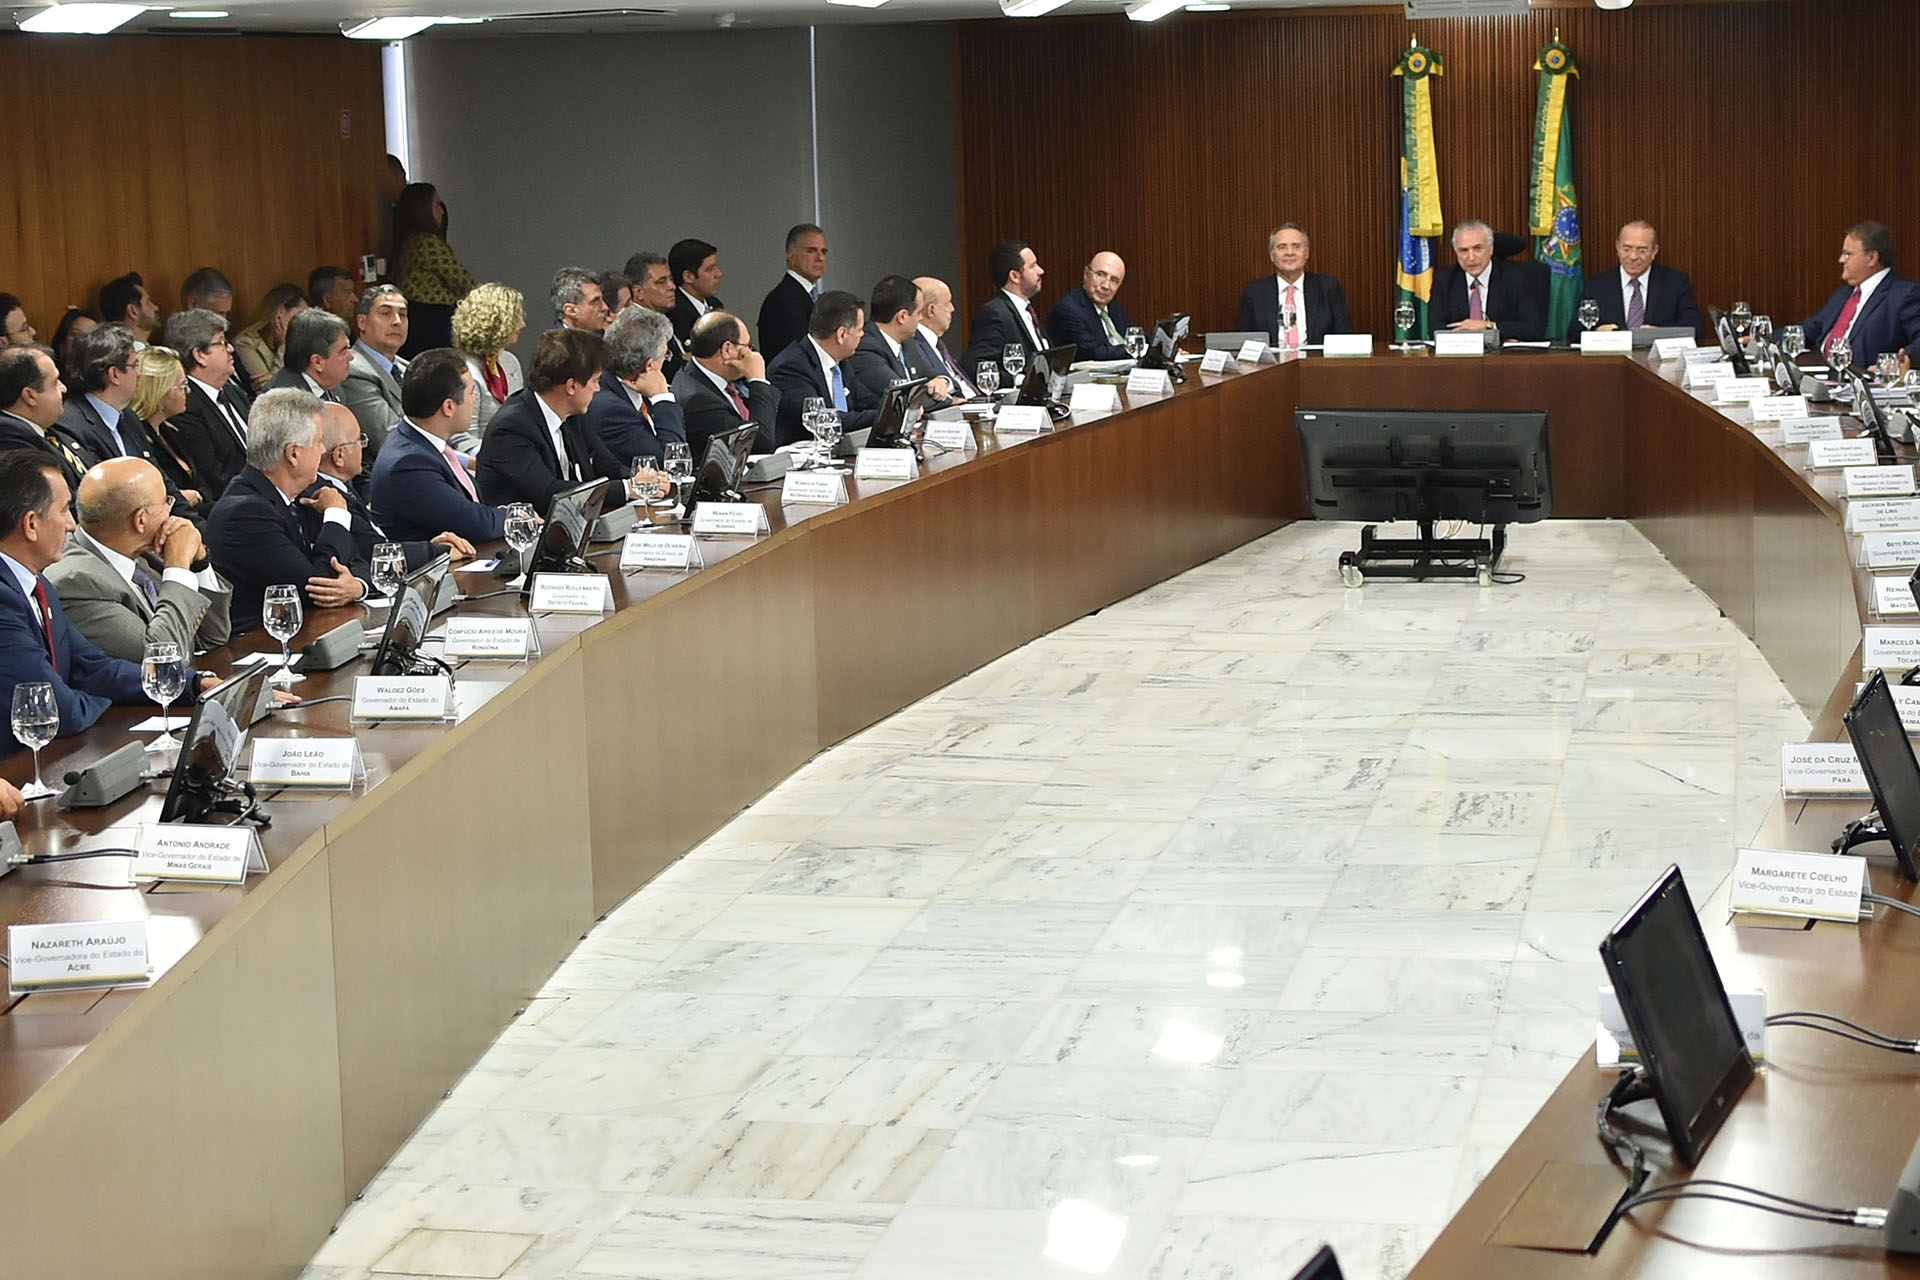 Chefes de Executivo do Fórum Permanente de Governadores em reunião com o presidente da República em exercício, Michel Temer.